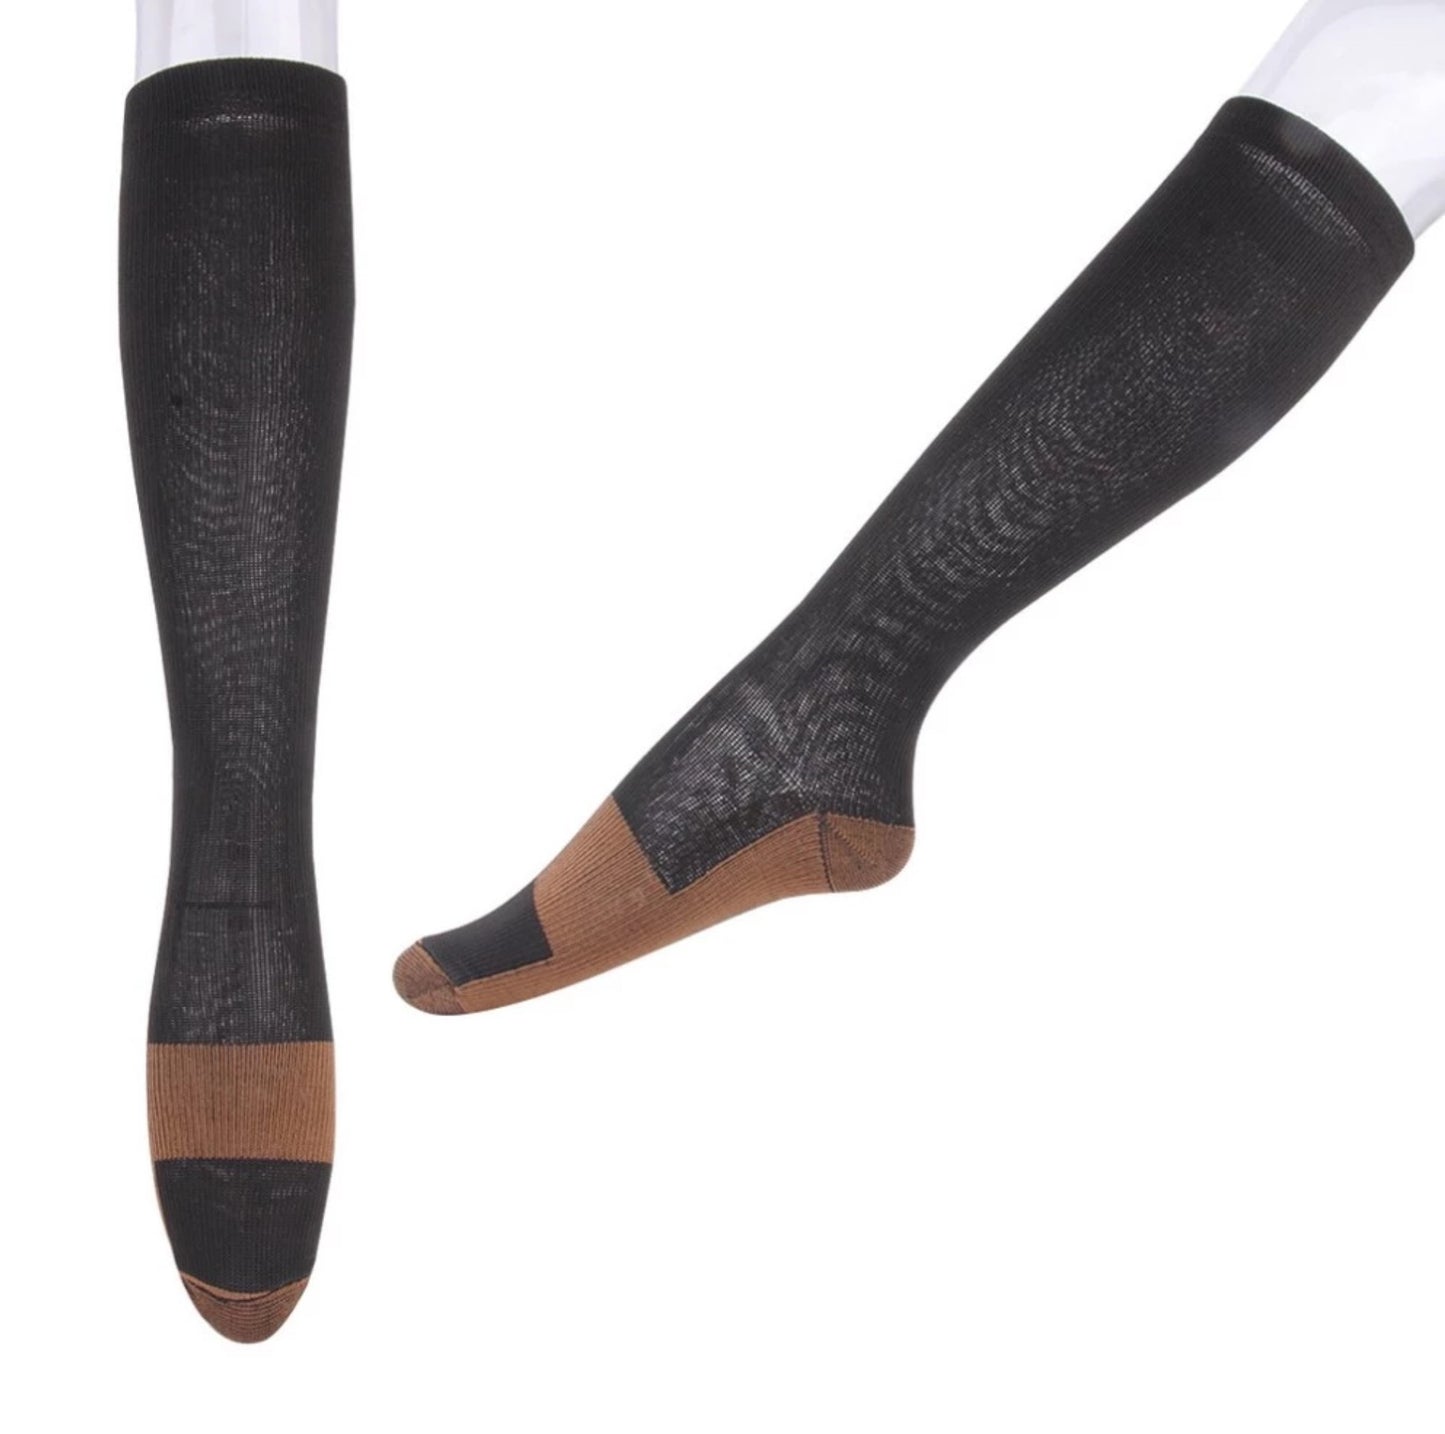 Copper Infused Anti-Fatigue Compression Socks